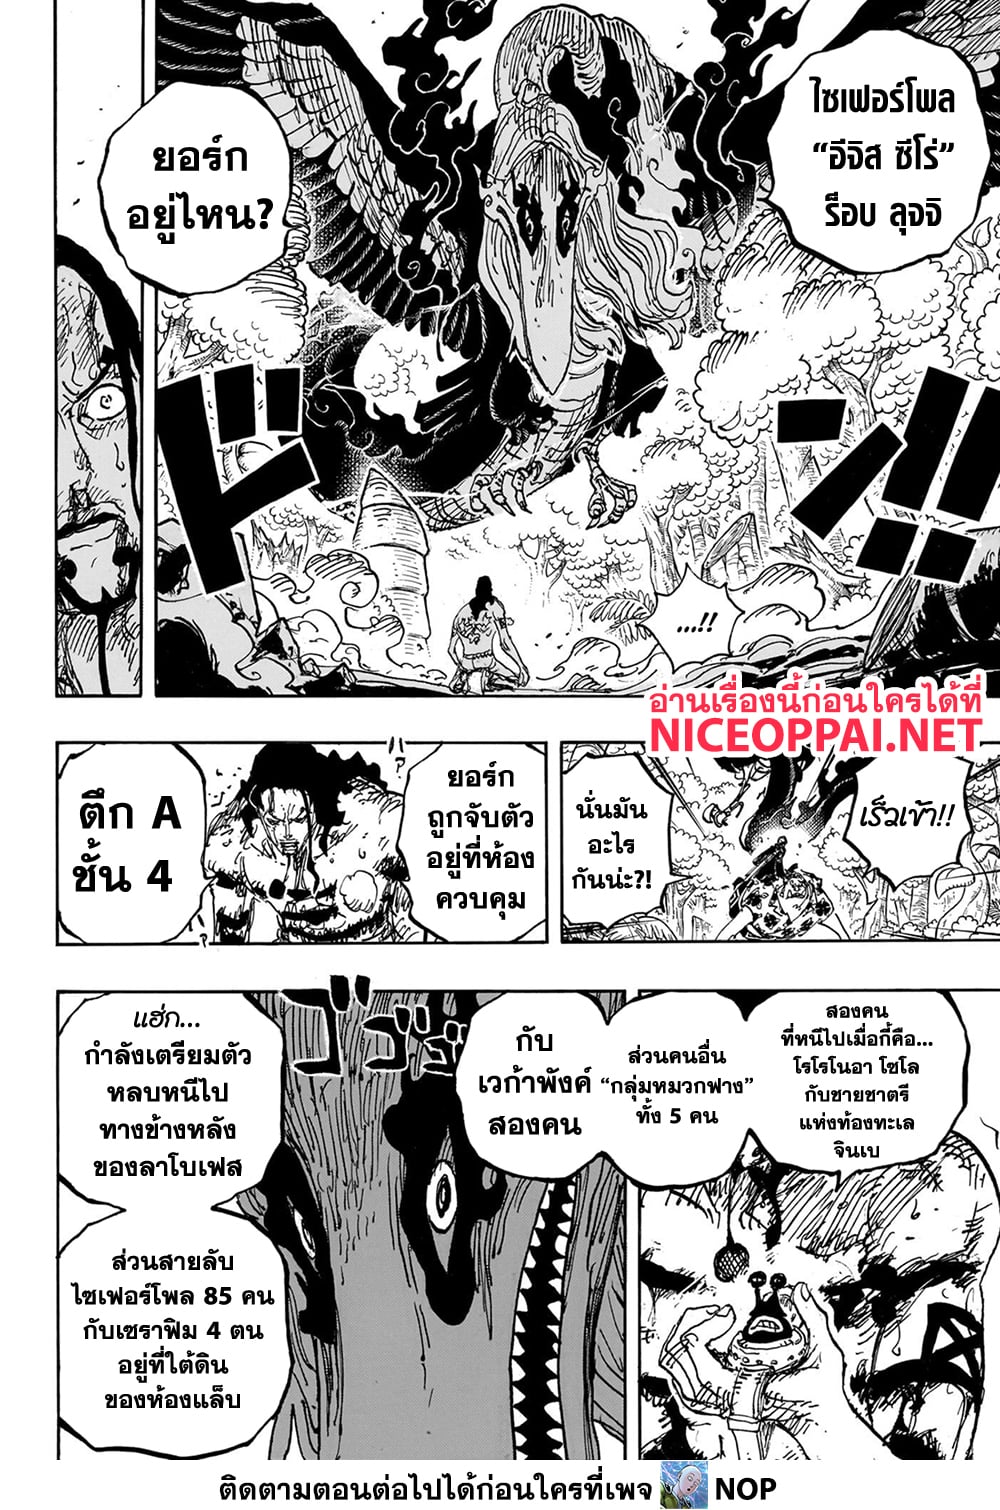 One Piece à¸•à¸­à¸™à¸—à¸µà¹ˆ 1111 (6)